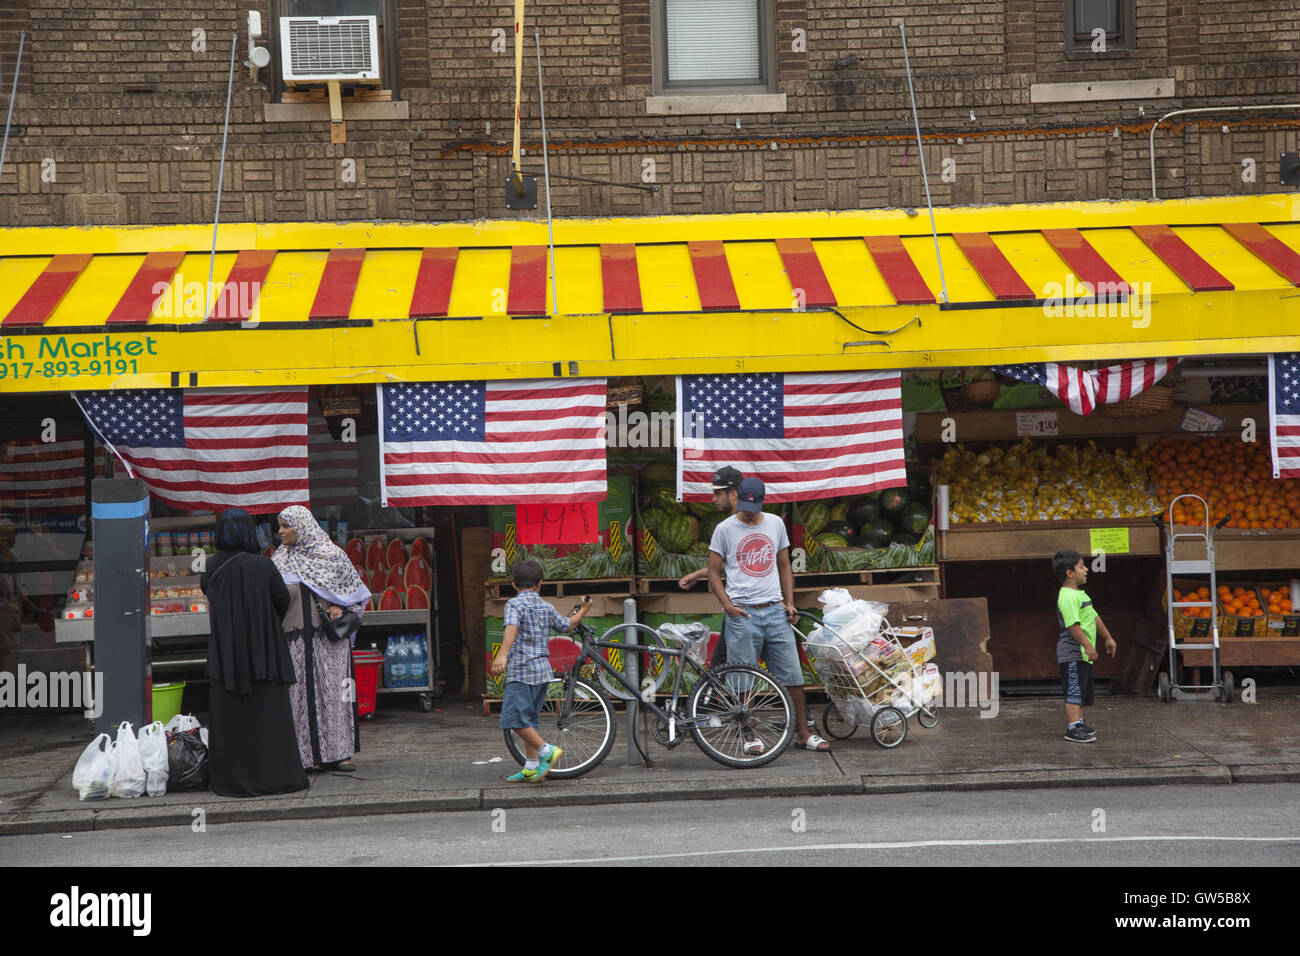 Marché de carnaval des drapeaux américains s'affiche comme un signe de patriotisme dans ce quartier d'immigrants de Kensington, Brooklyn, New York. Banque D'Images